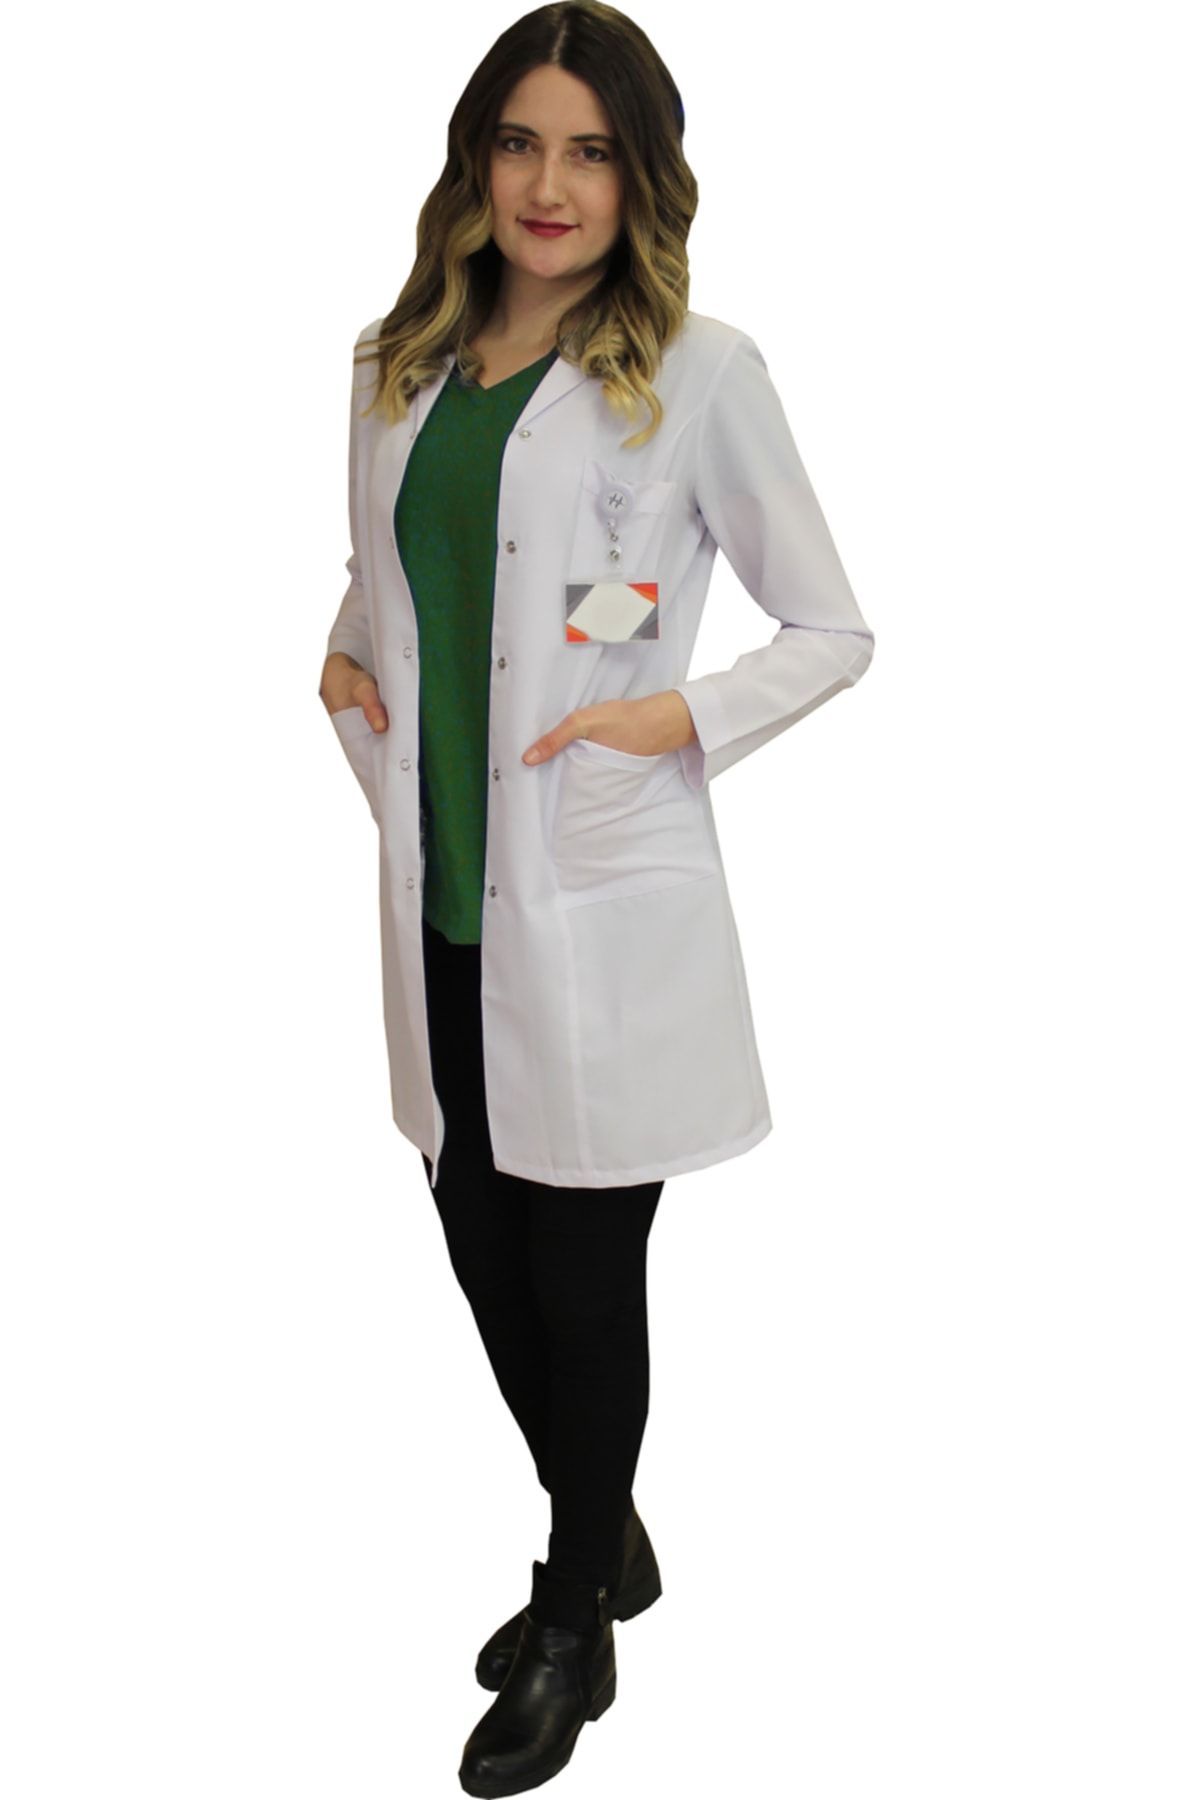 safaforma Gömlek Yaka Kadın Orta Boy - Uzun Kol Doktor Önlüğü Öğretmen Önlüğü , Hastane Forması Beyaz Önlük